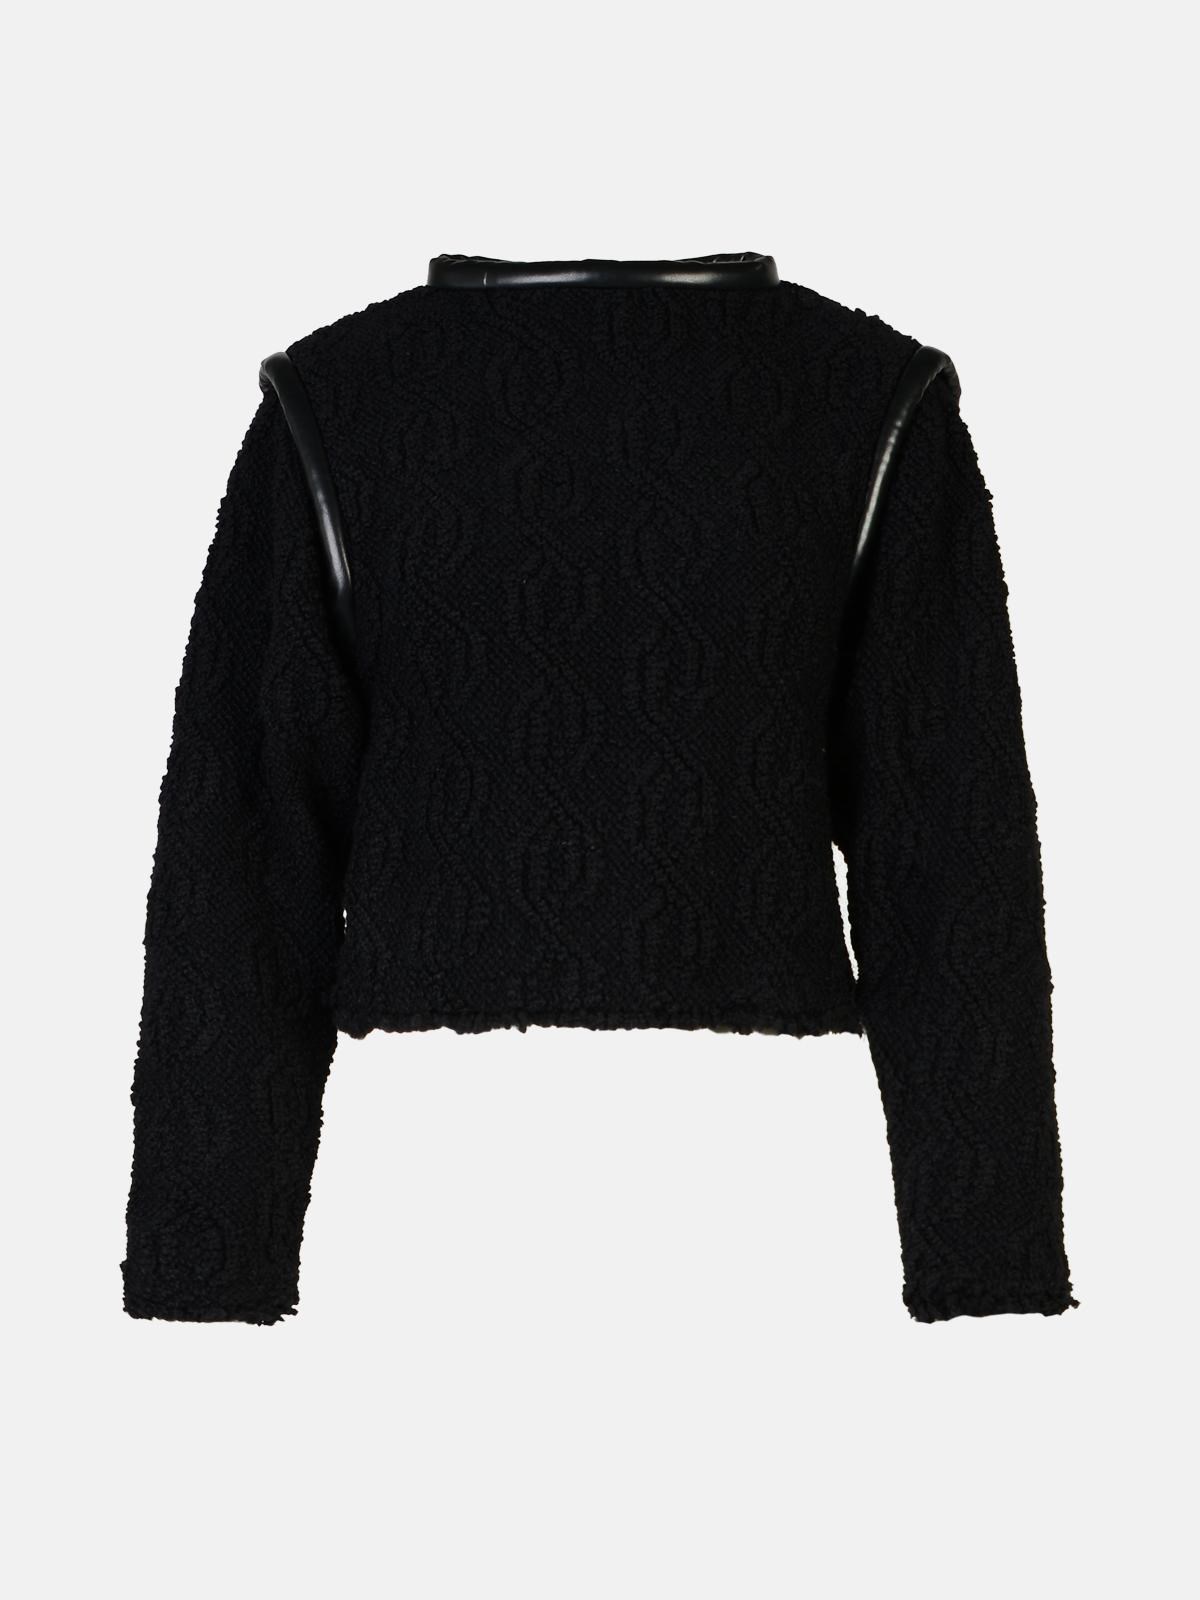 Isabel Marant 'ladiva' Black Wool Mistro Sweater